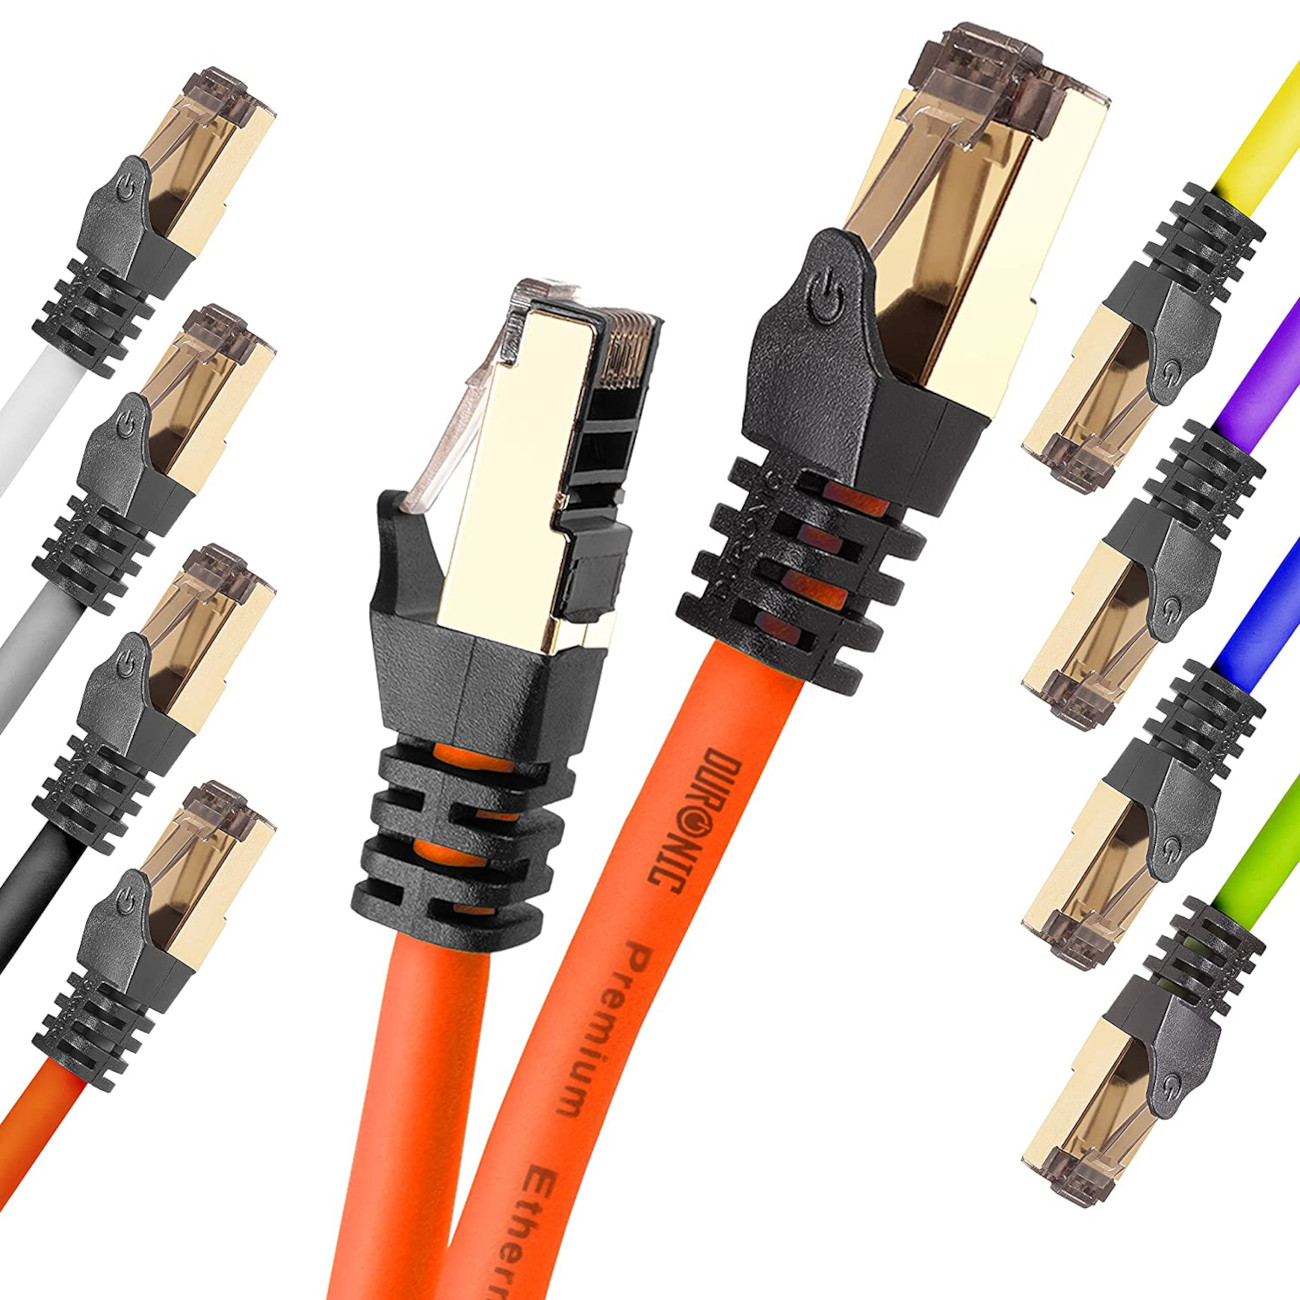 | | Lankabel DURONIC OE | MB/s m 5 Patchkabel 5m Ethernetkabel Netzwerkkabel, RJ45 Konsole, für 5.000 CAT8 Router und